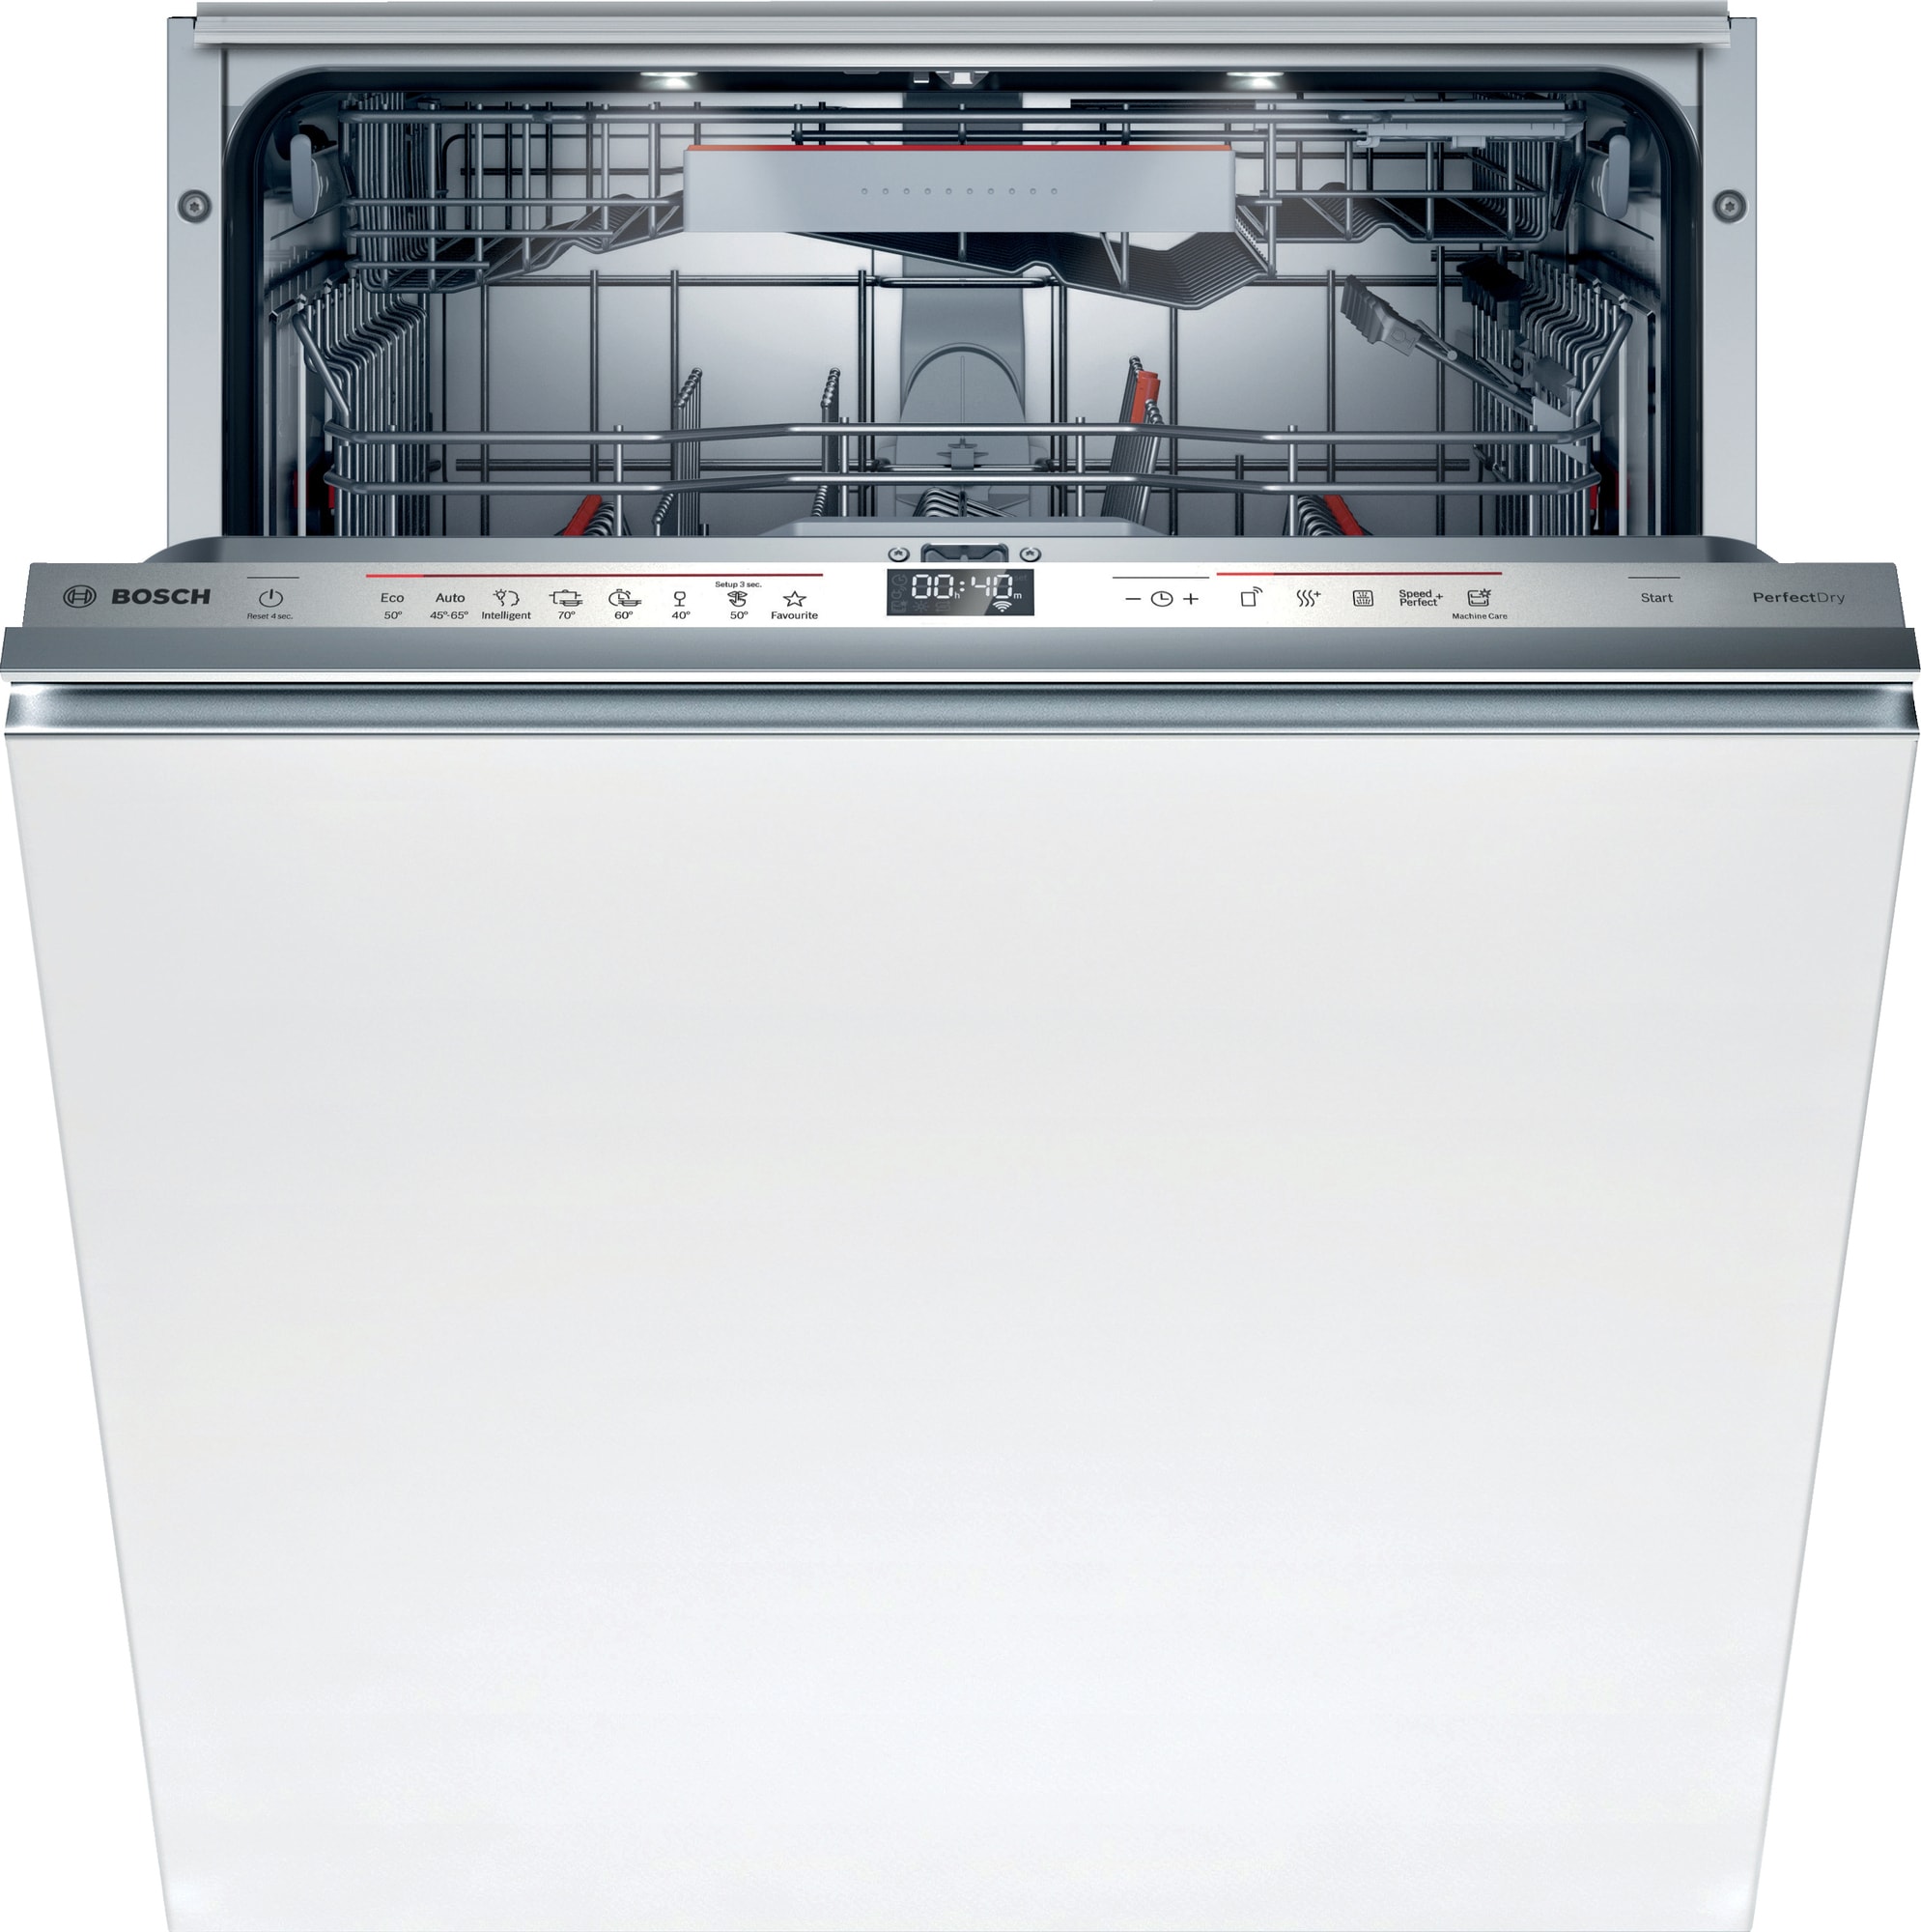 Reskyd Forgænger håndvask Bosch opvaskemaskine SMV6ZDX49S | Elgiganten